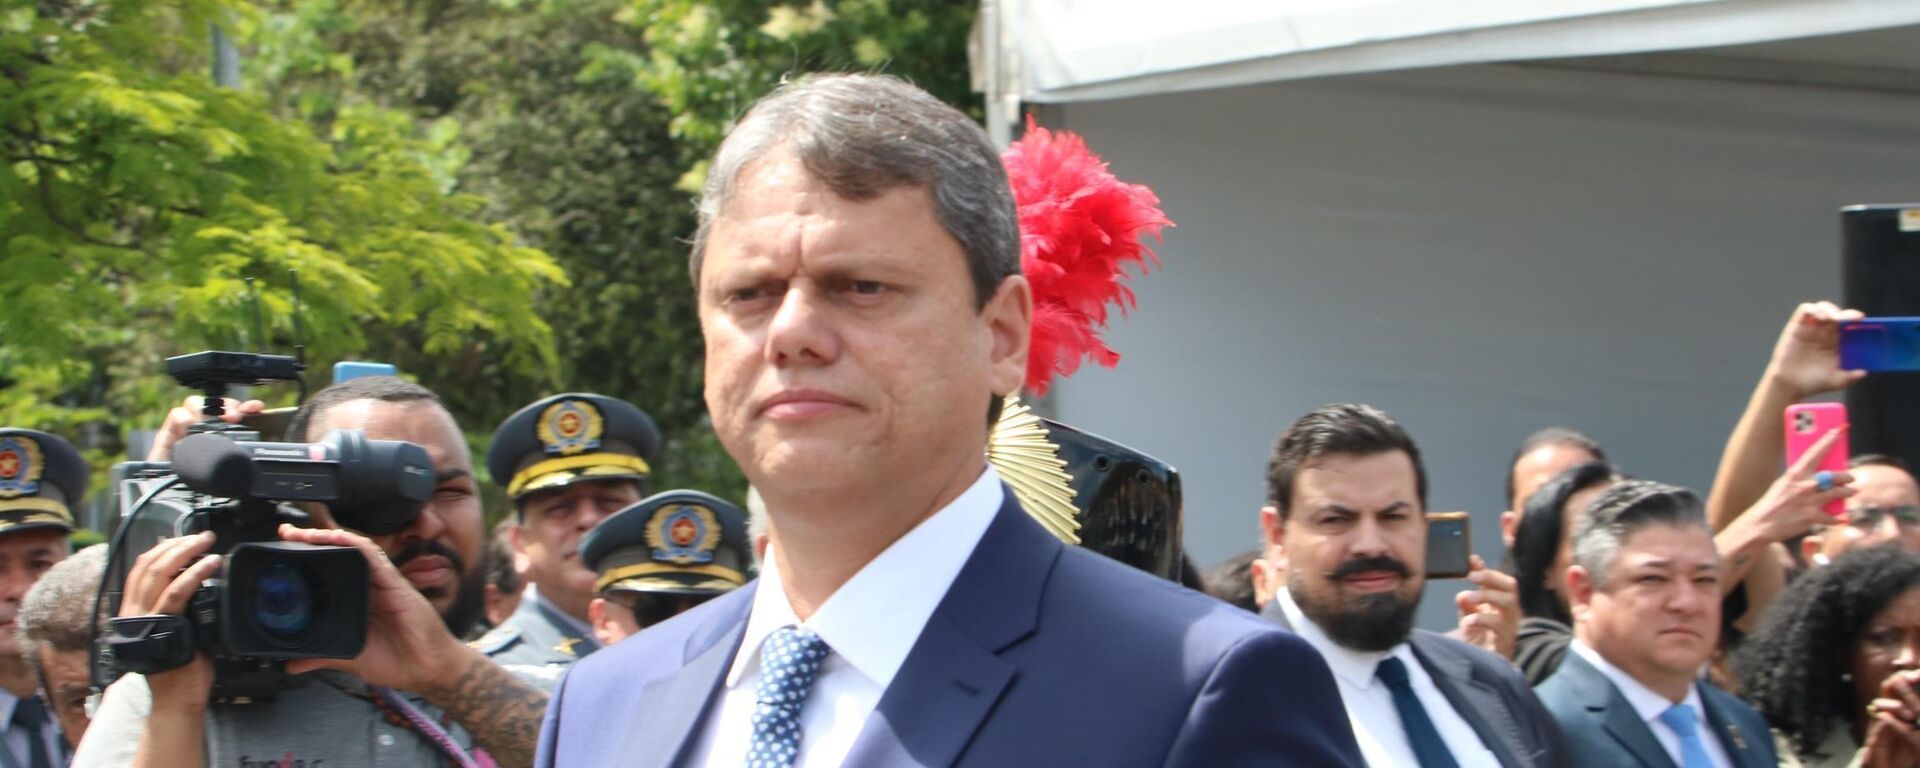 Tarcísio de Freitas (Republicanos) durante a cerimônia de posse como governador de São Paulo, no dia 1º de janeiro de 2023 - Sputnik Brasil, 1920, 09.07.2023